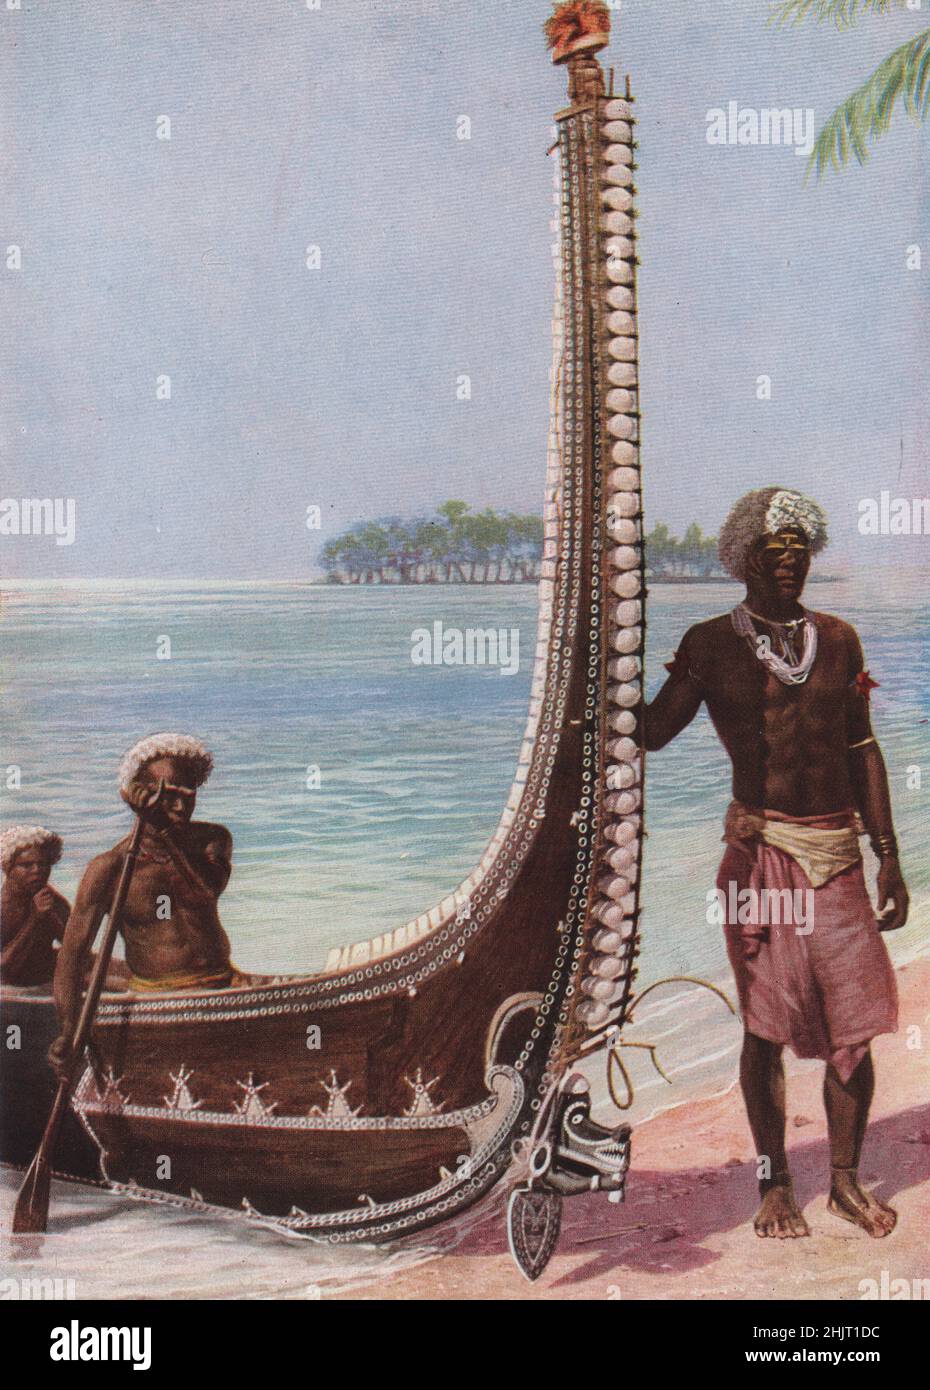 Parmi les îles Salomon, les canots de guerre sont décorés de nacre et de cowries. Au-delà est un atoll. Pacifique Sud (1923) Banque D'Images